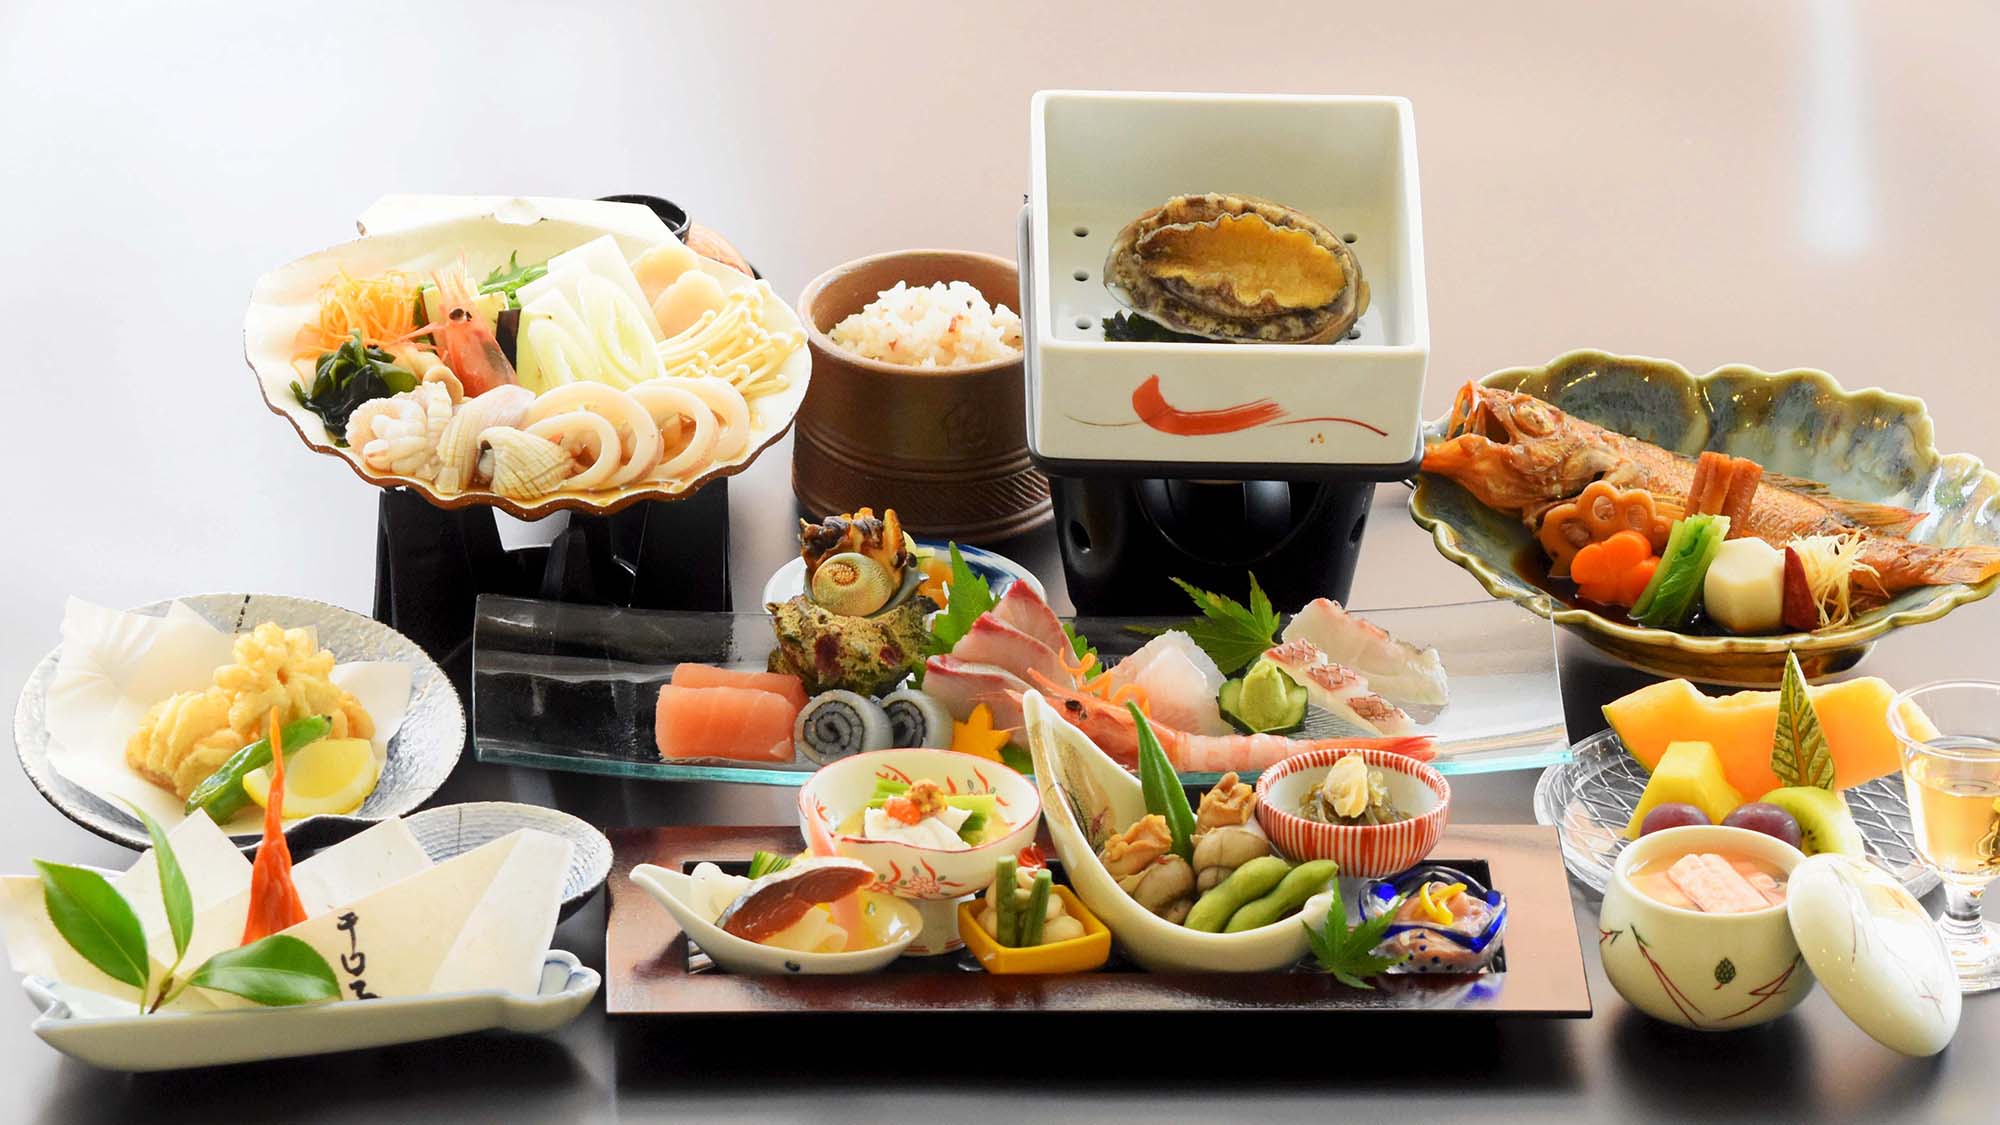 ・【能登海会席一例】日本三大珍味のひとつ「くちこ」もご賞味ください